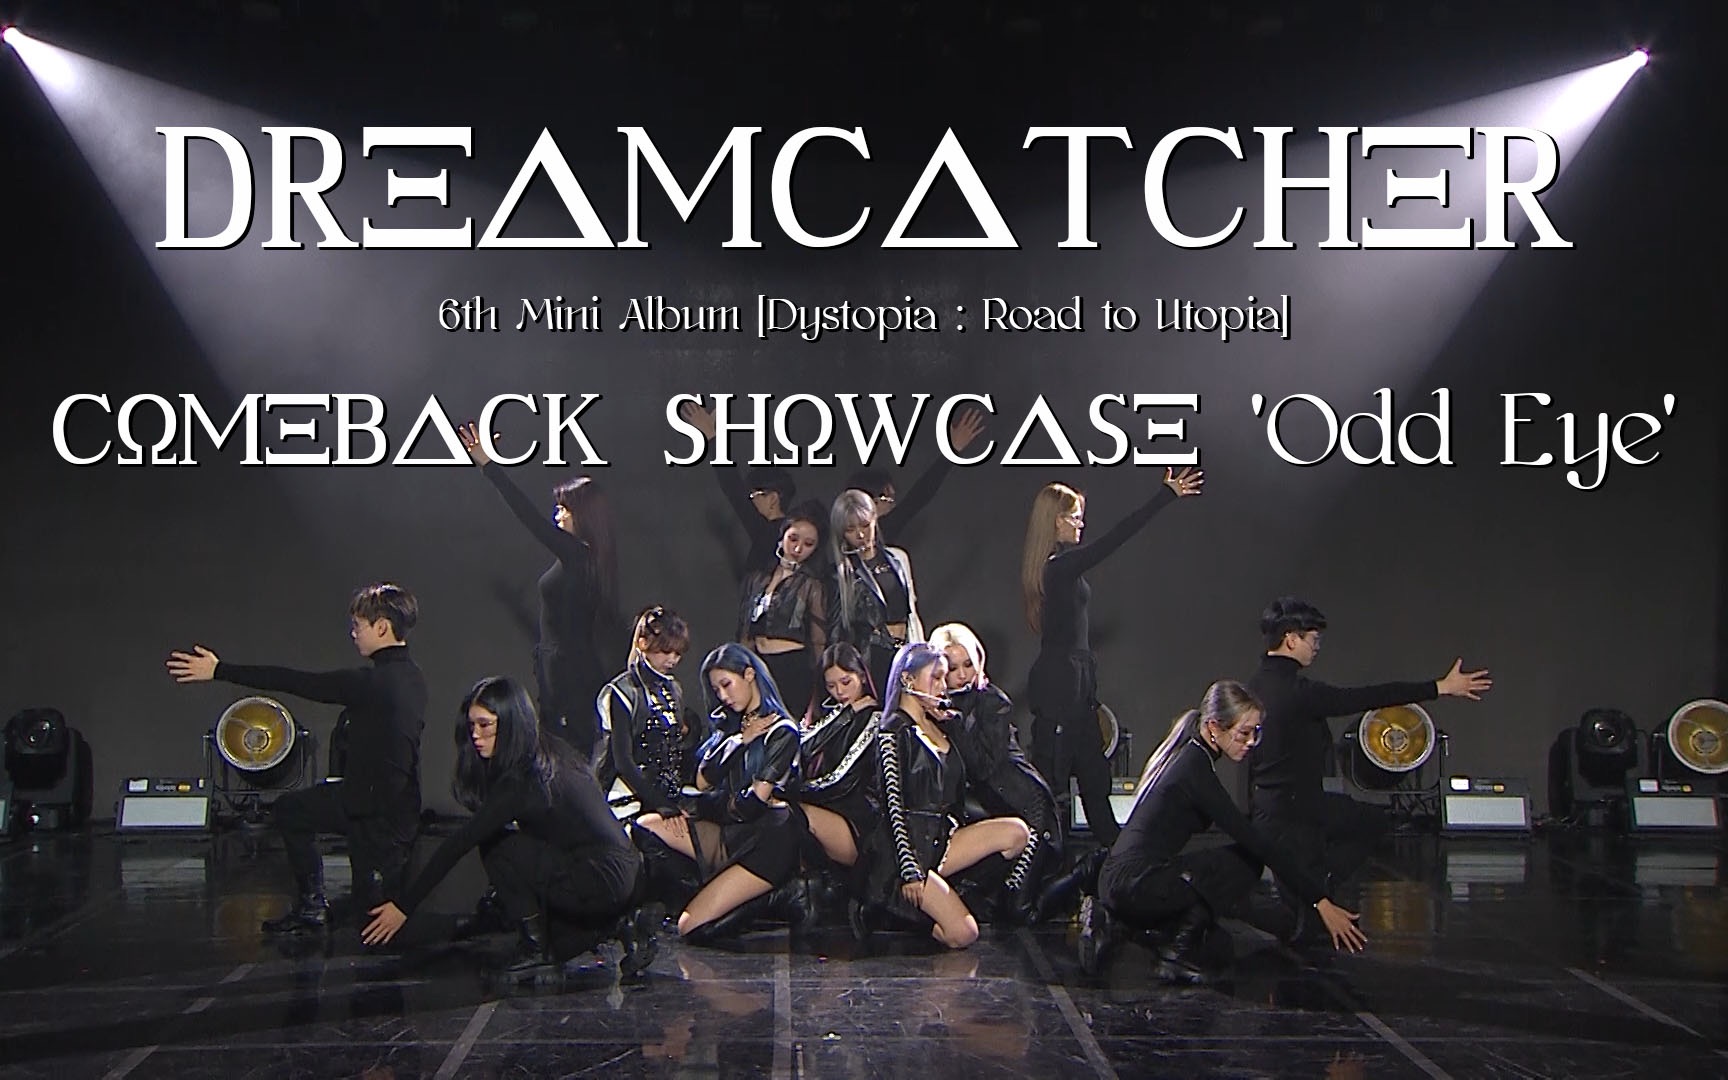 【评价】Dreamcatcher 'Odd Eye' Comeback Showcase[1次更新]的第1张示图